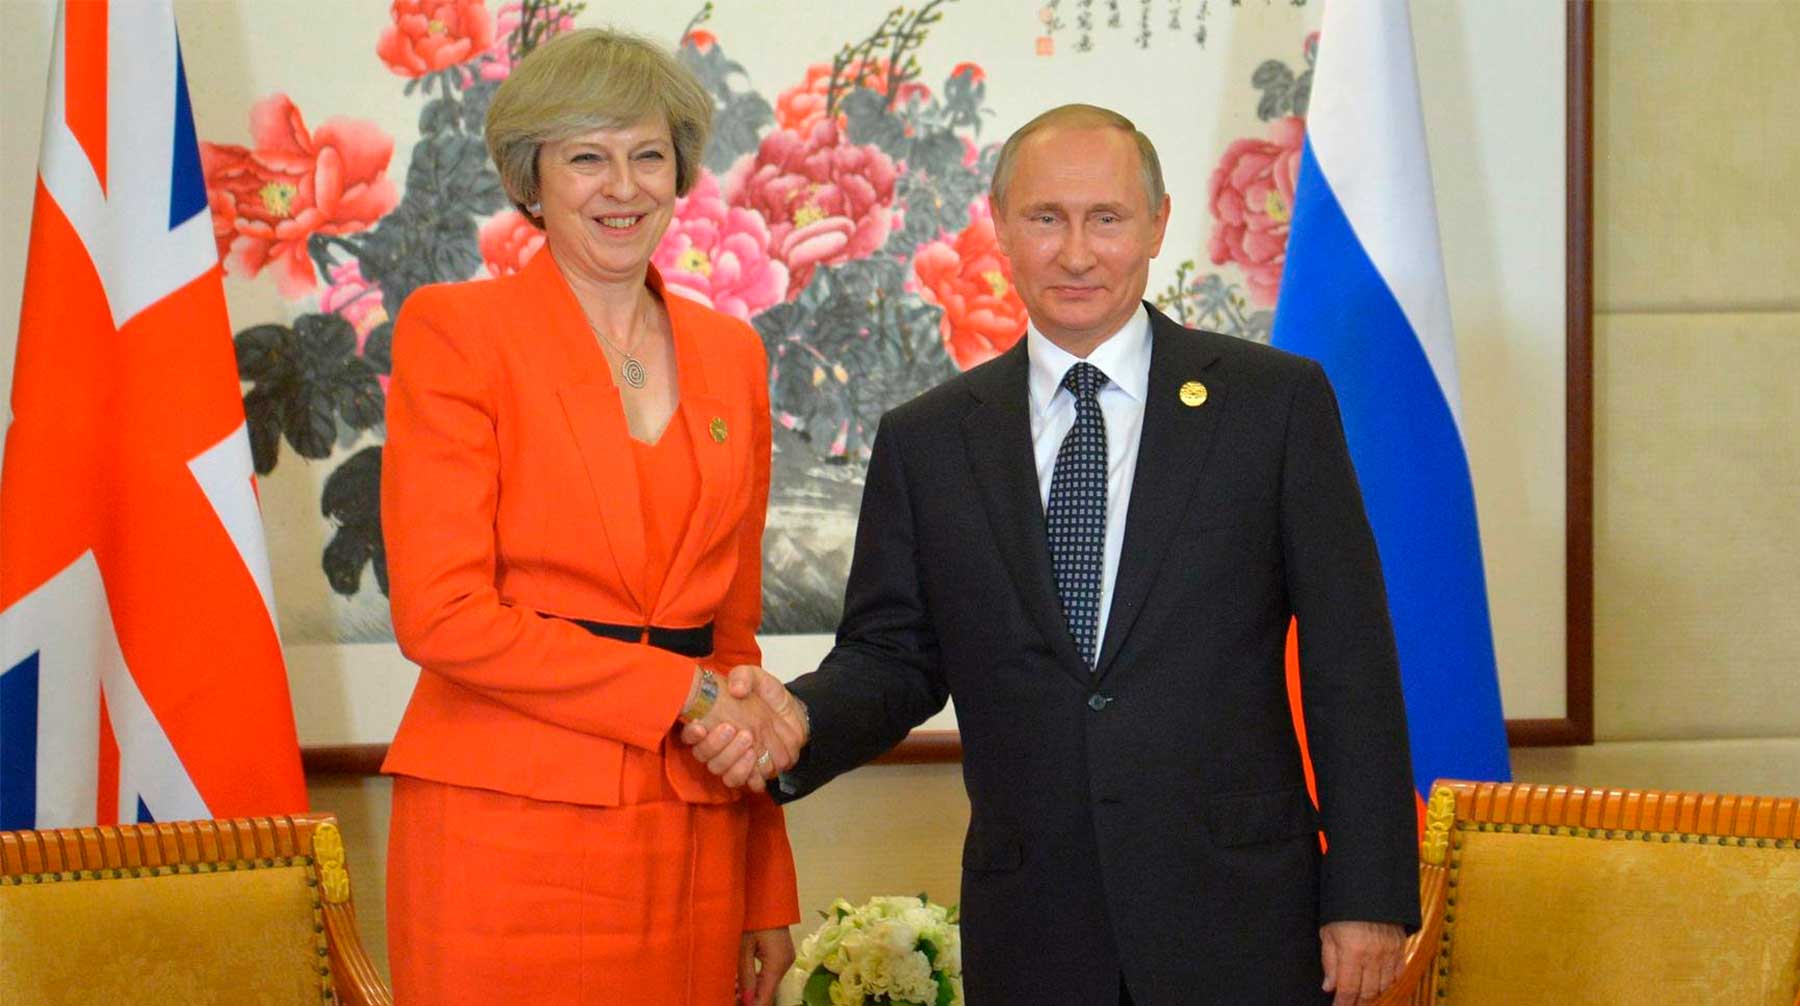 Издание утверждает, что на саммите G20 может состояться встреча президента РФ Владимира Путина с премьером Британии Терезой Мэй Тереза Мэй и Владимир Путин на саммите G20 в 2016 году